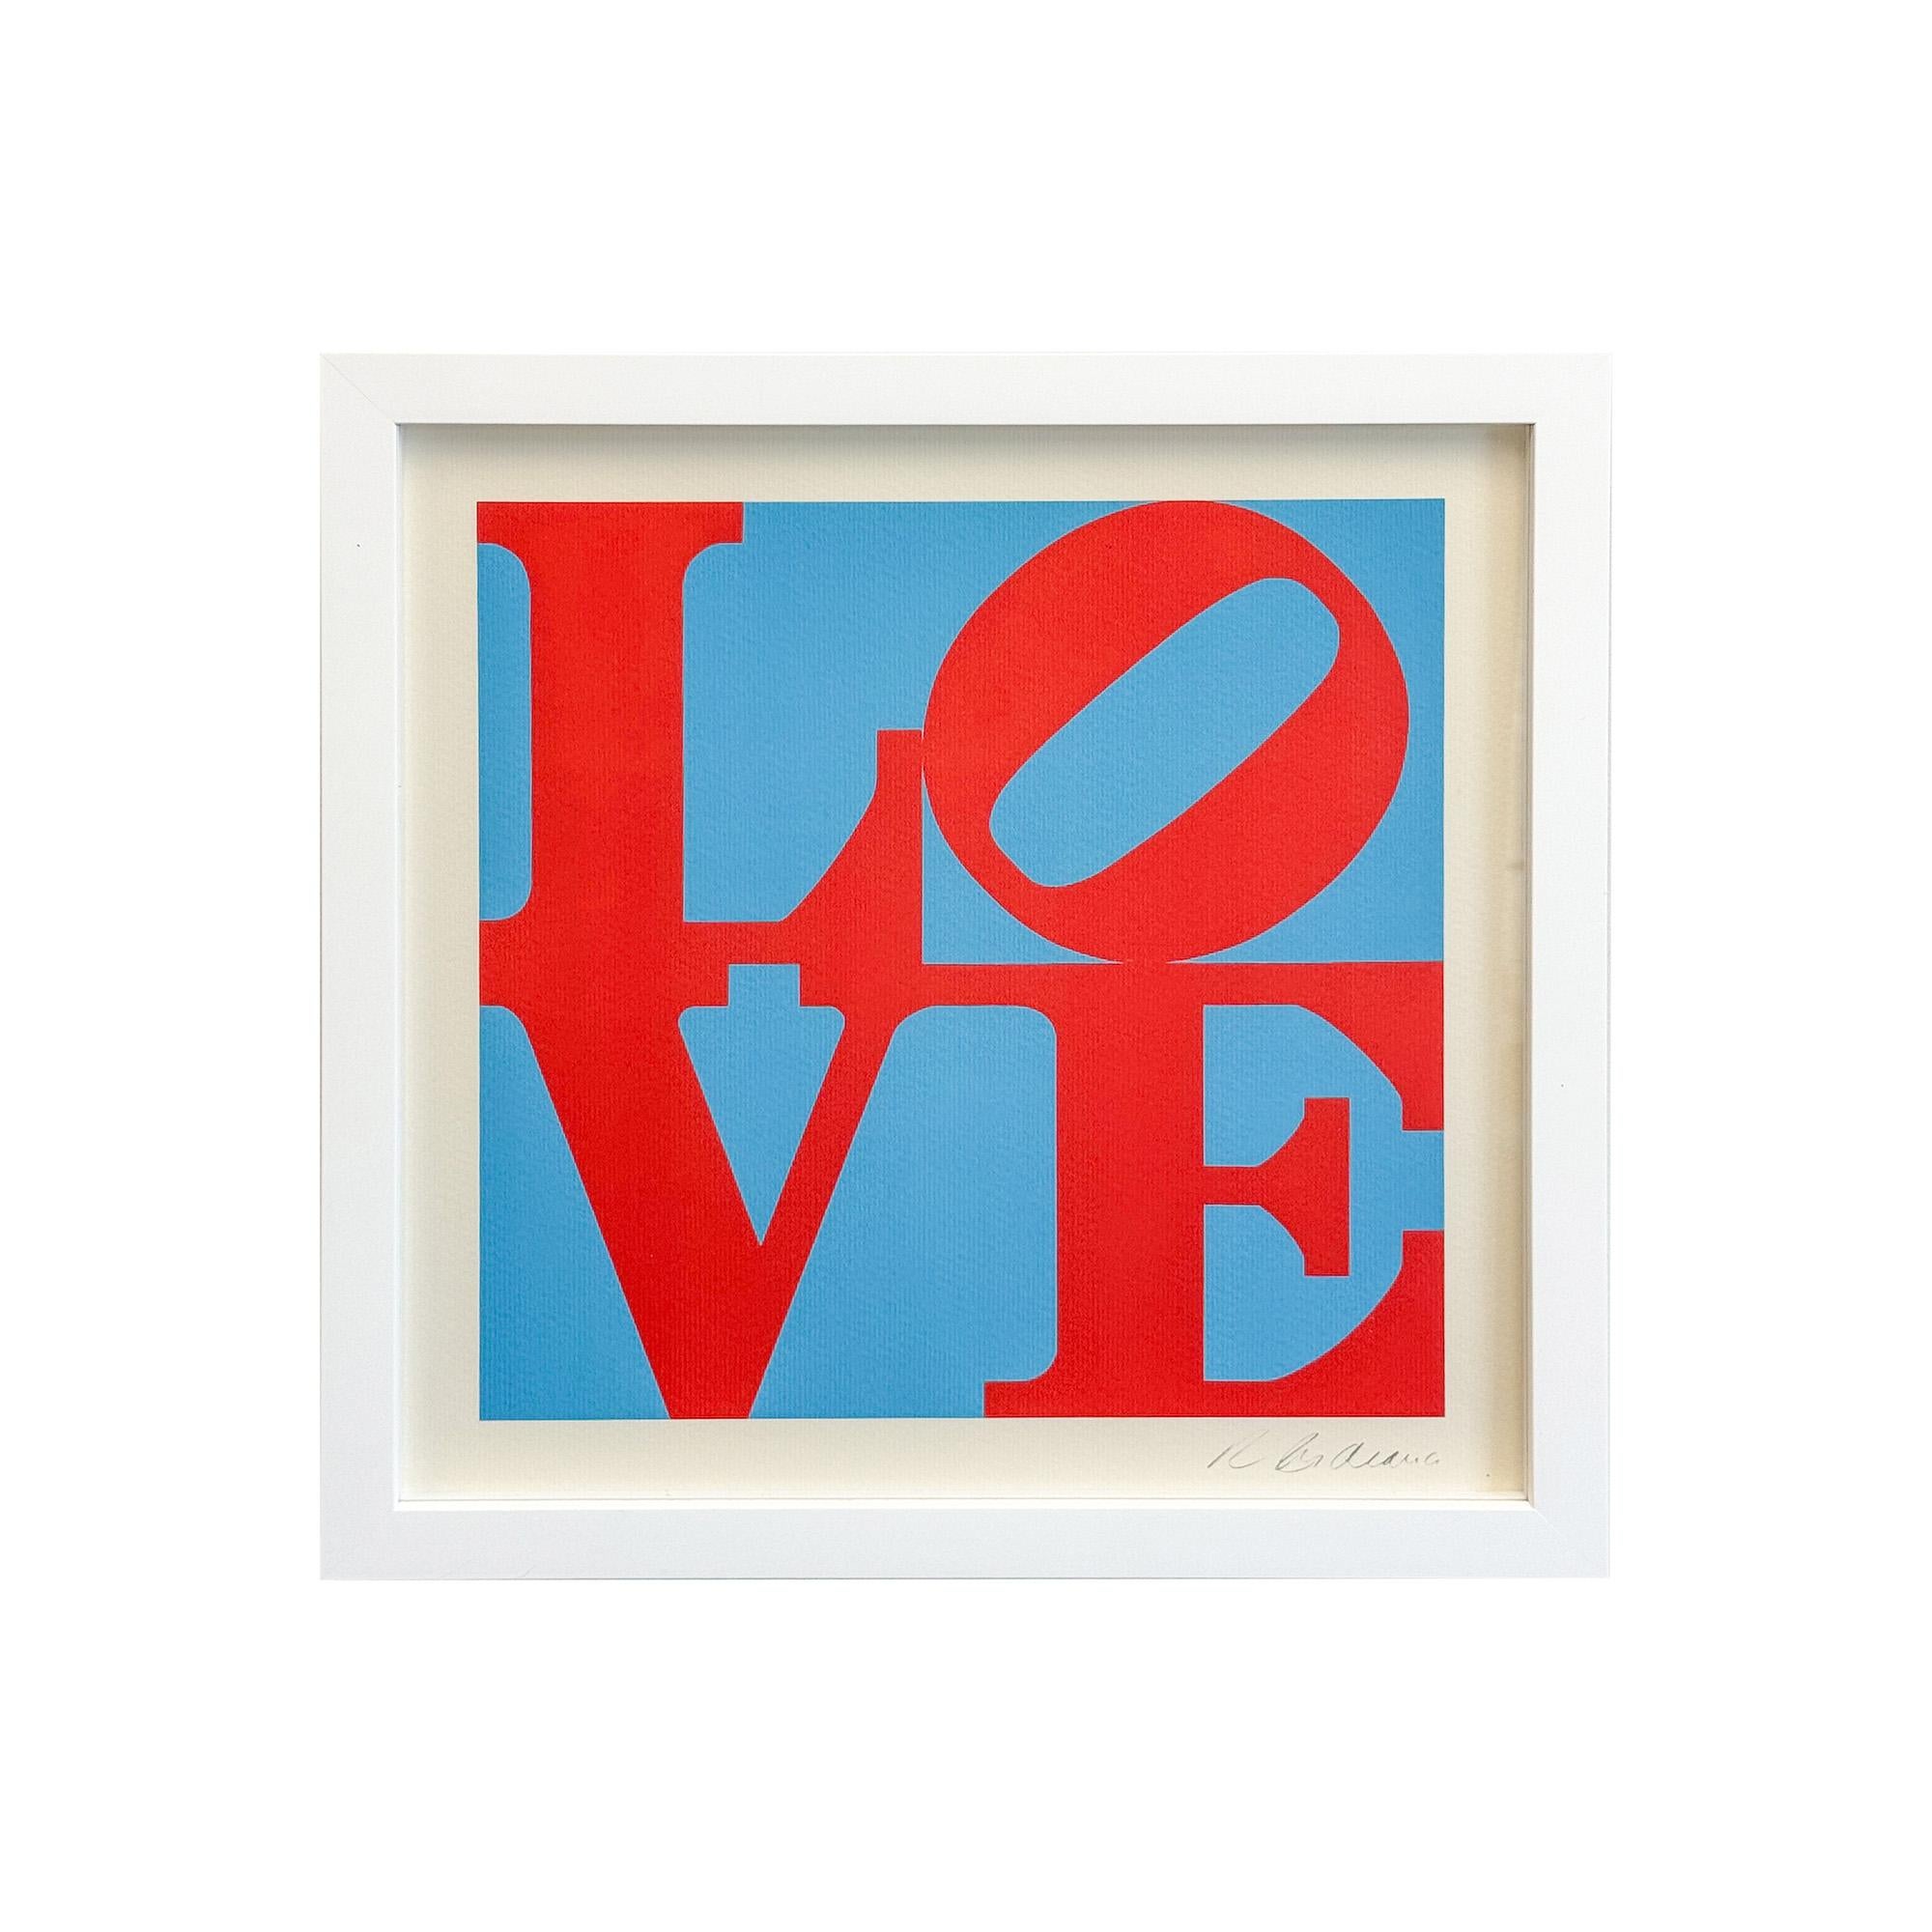 Eine limitierte Auflage der Lithographie des Pop-Art-Künstlers Robert Indiana ( Amerikaner 1928 - 2018)  seiner ikonischen Philidalphia Love in Rot und Blau mit der Nummer 87/225. Die Lithografie wurde im Jahr 2000 vom Guggenheim Museum in 225